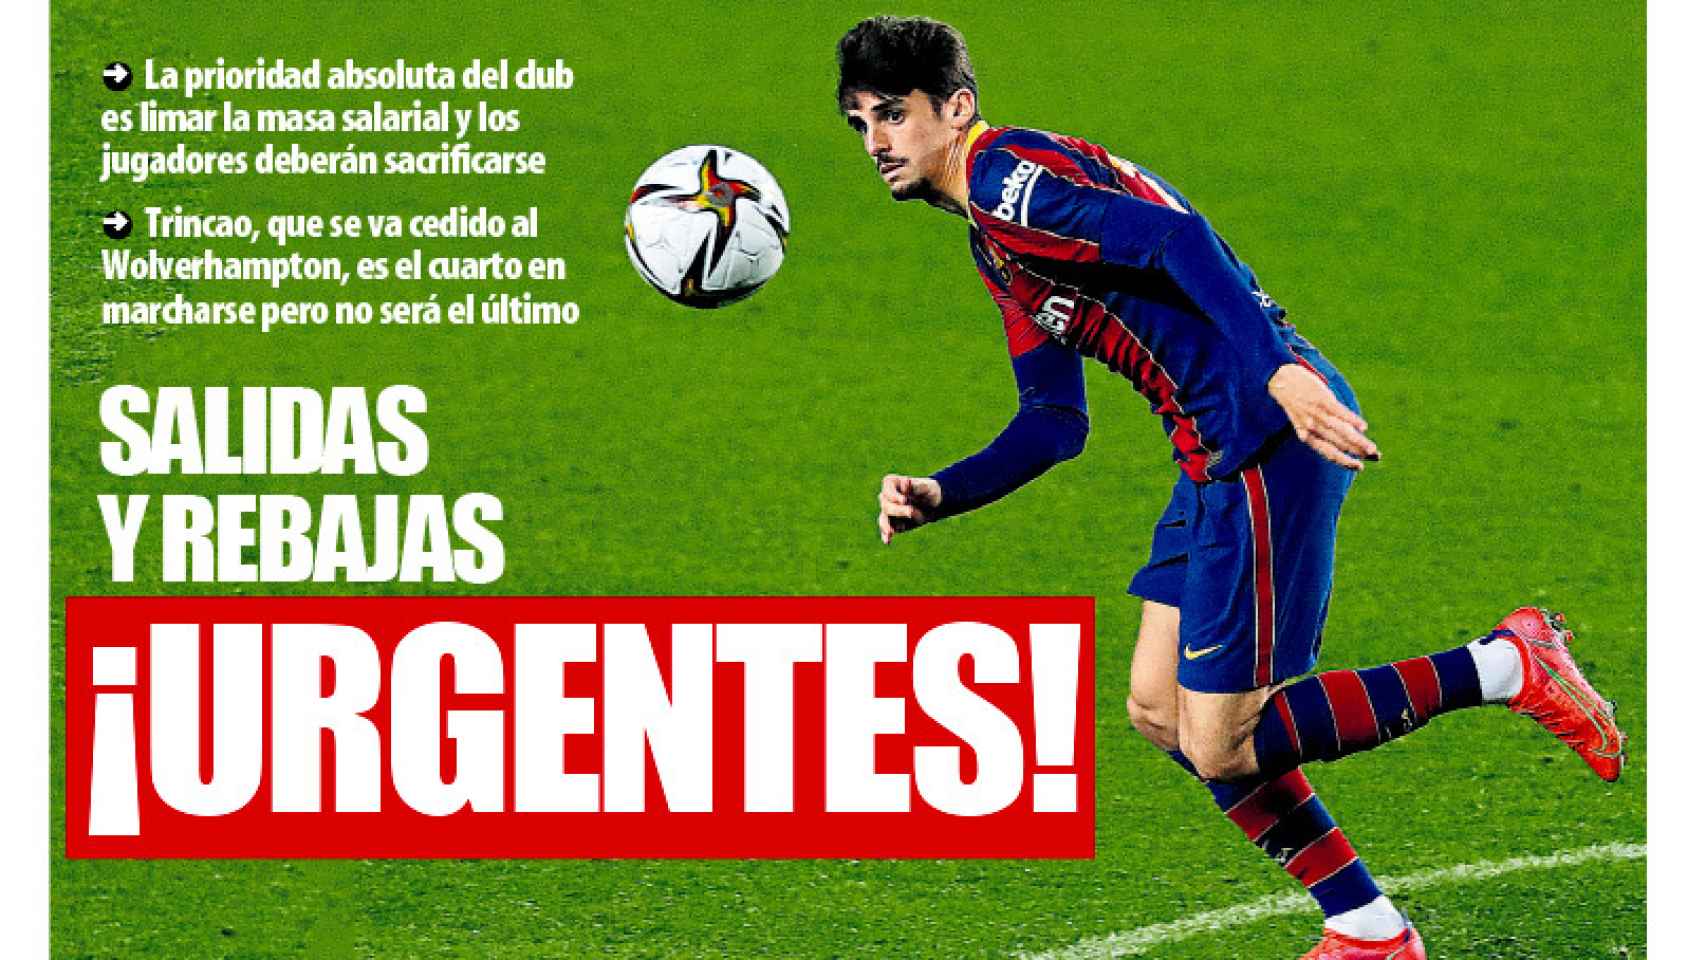 La portada del Mundo Deportivo (05/07/2021)